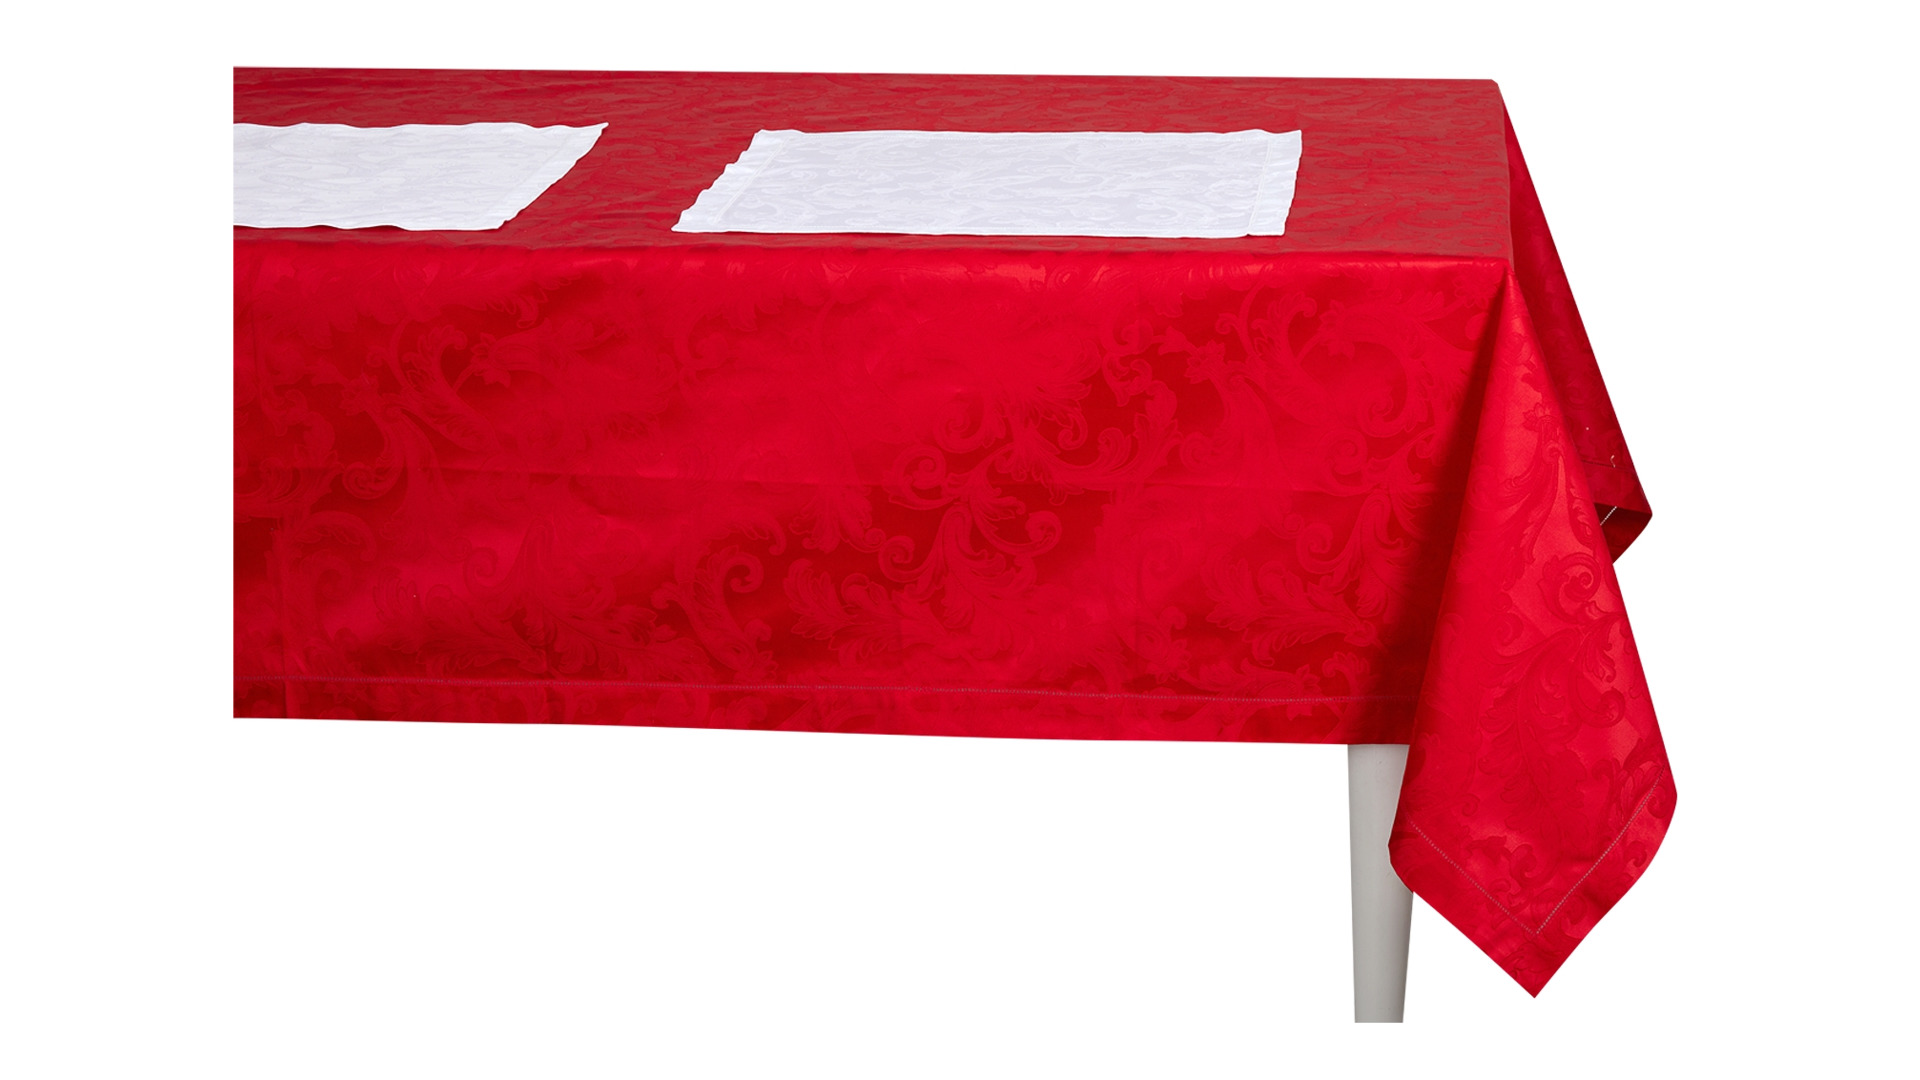 Набор столового белья Кадомский вениз Acanto Rosso 13 предметов, красный с белым, хлопок, п/к